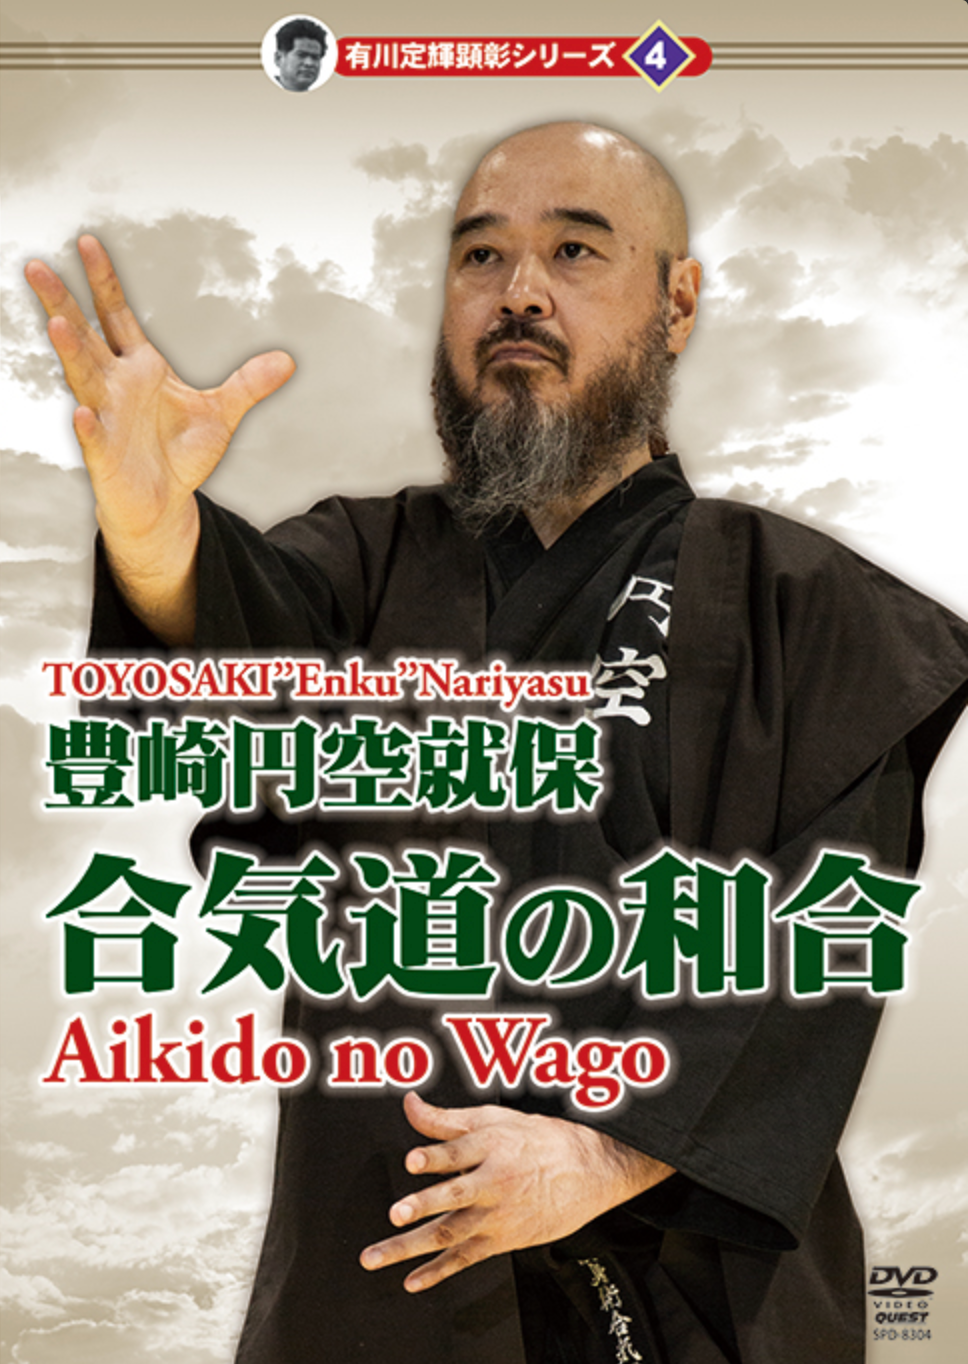 Aikido no Wago DVD by Toyosaki Enku Nariyasu - Budovideos Inc